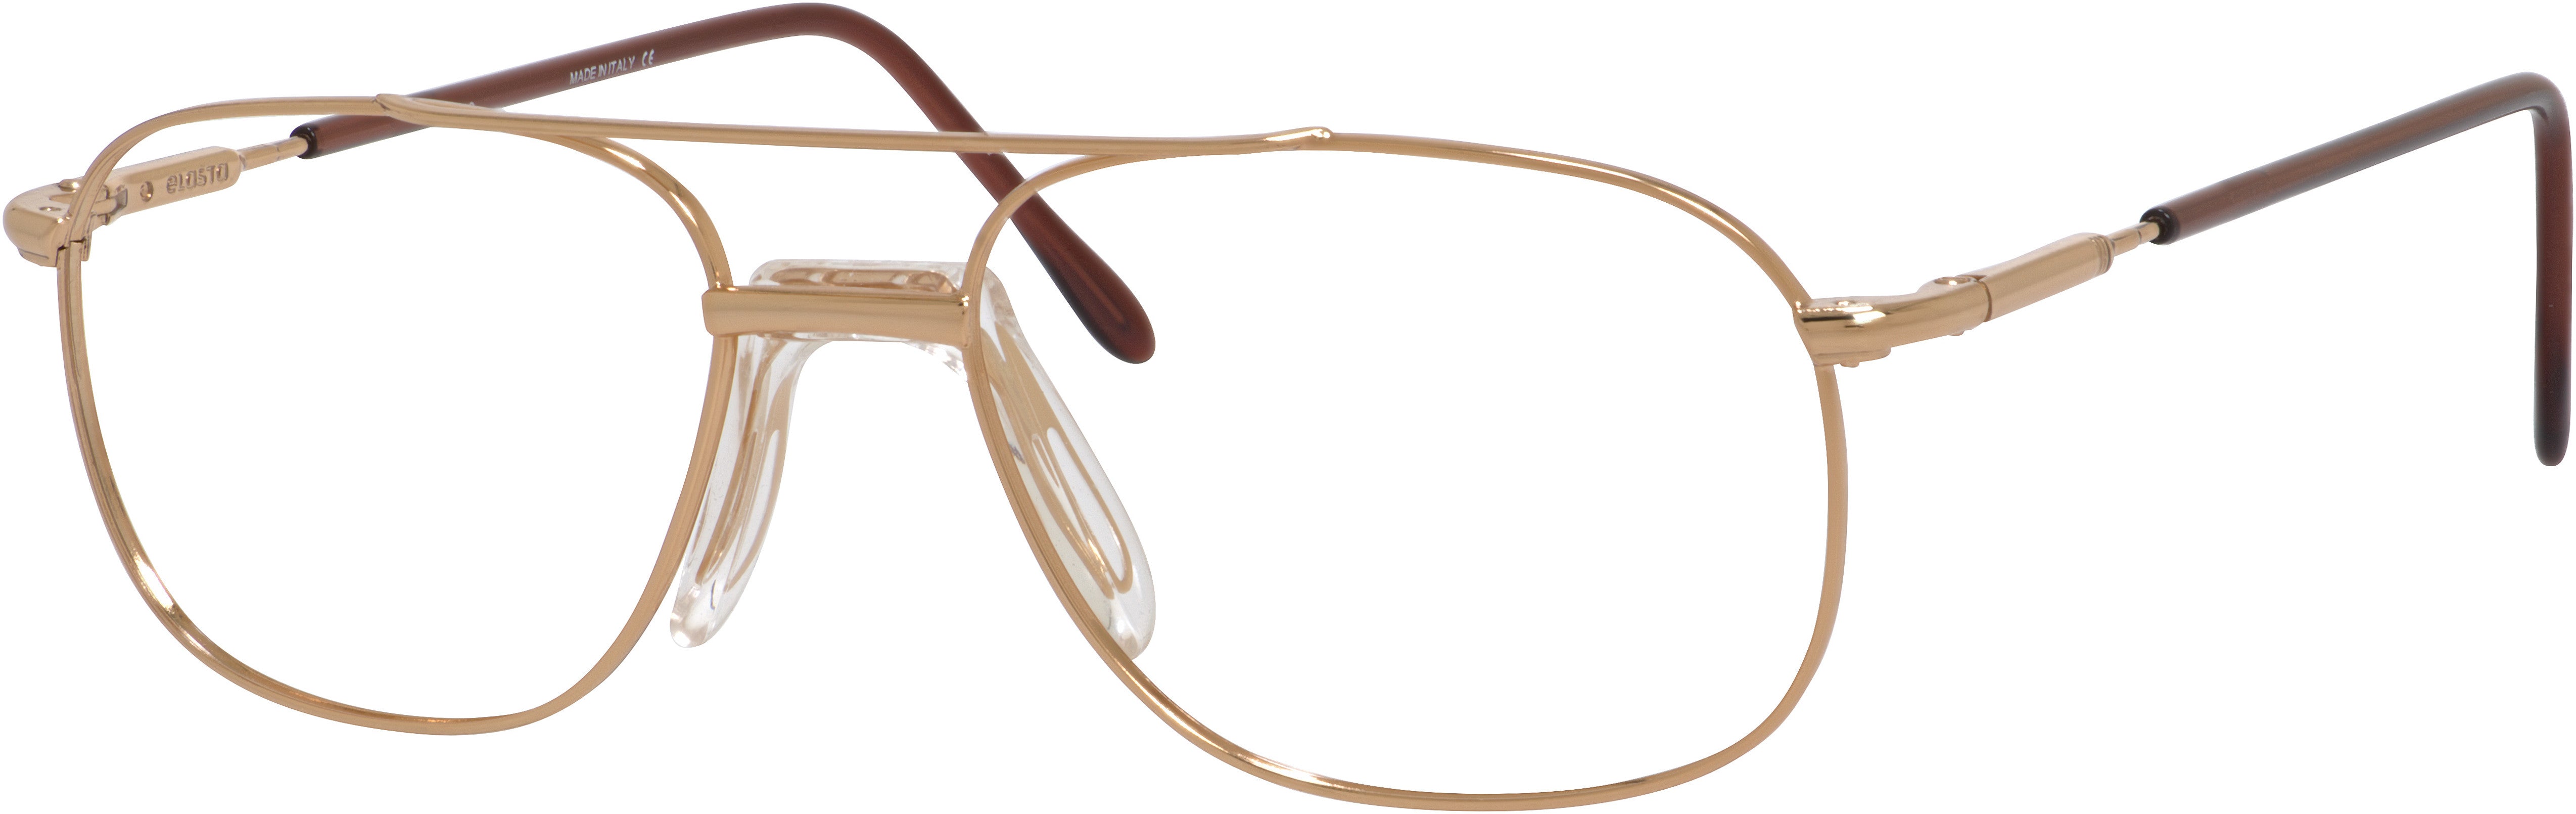  Elasta 7045 Rectangular Eyeglasses 0000-0000  Rose Gold (00 Demo Lens)